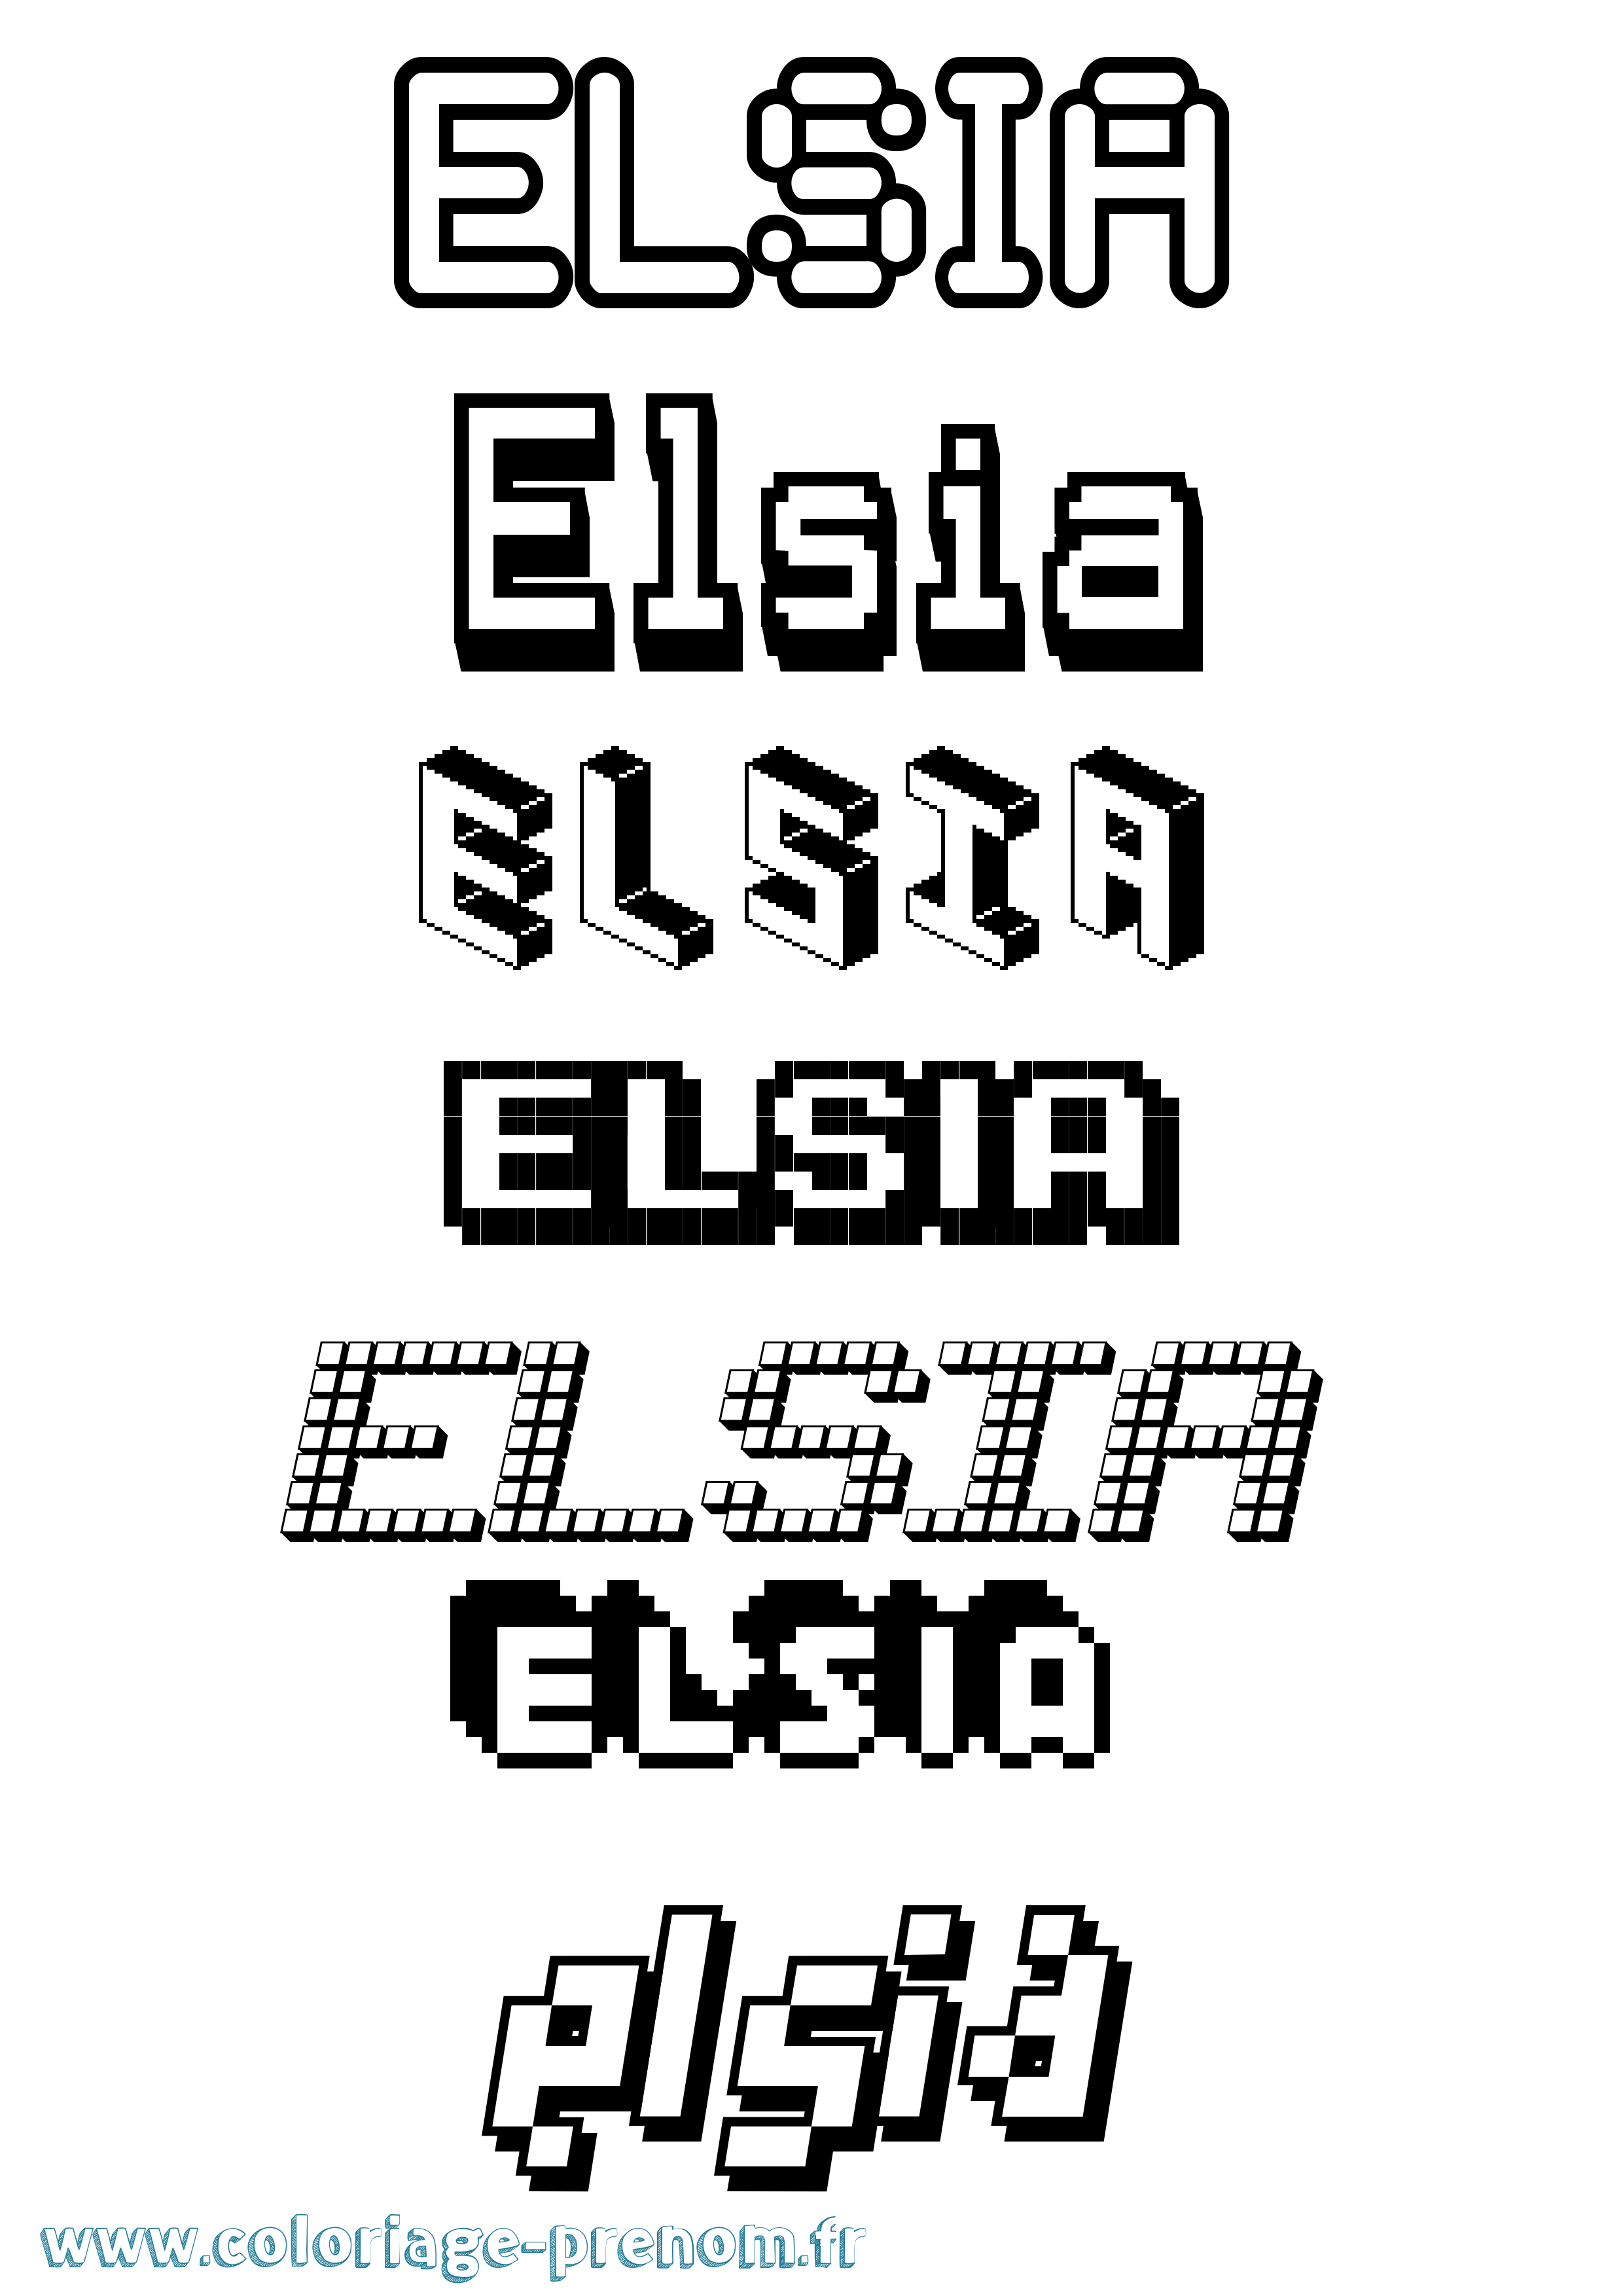 Coloriage prénom Elsia Pixel